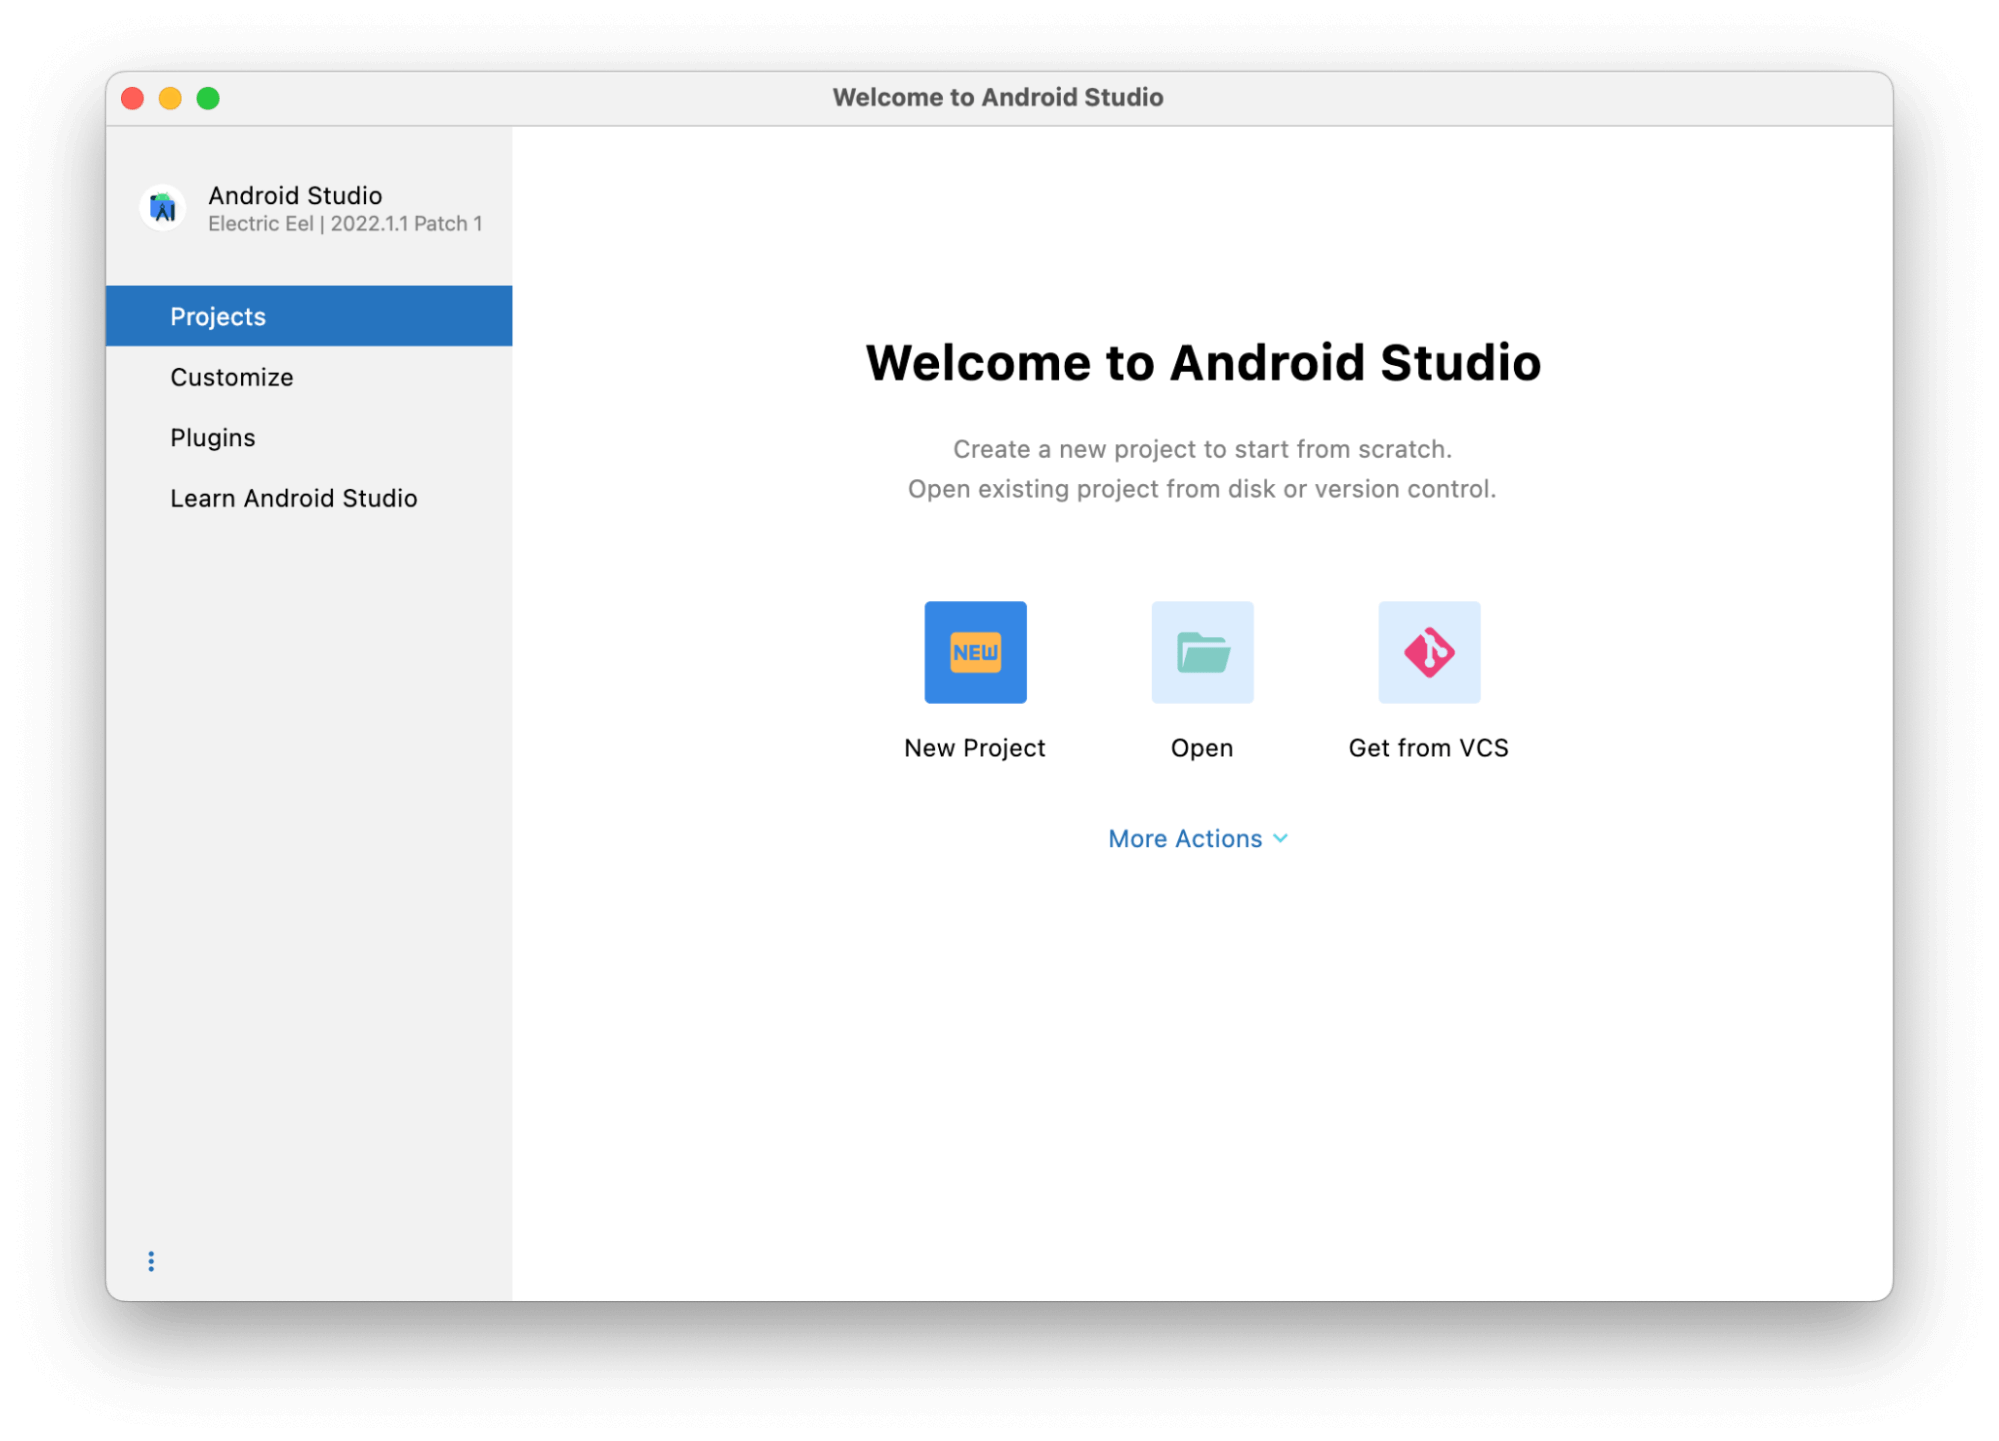 Android Studio Electric Eel siap digunakan!